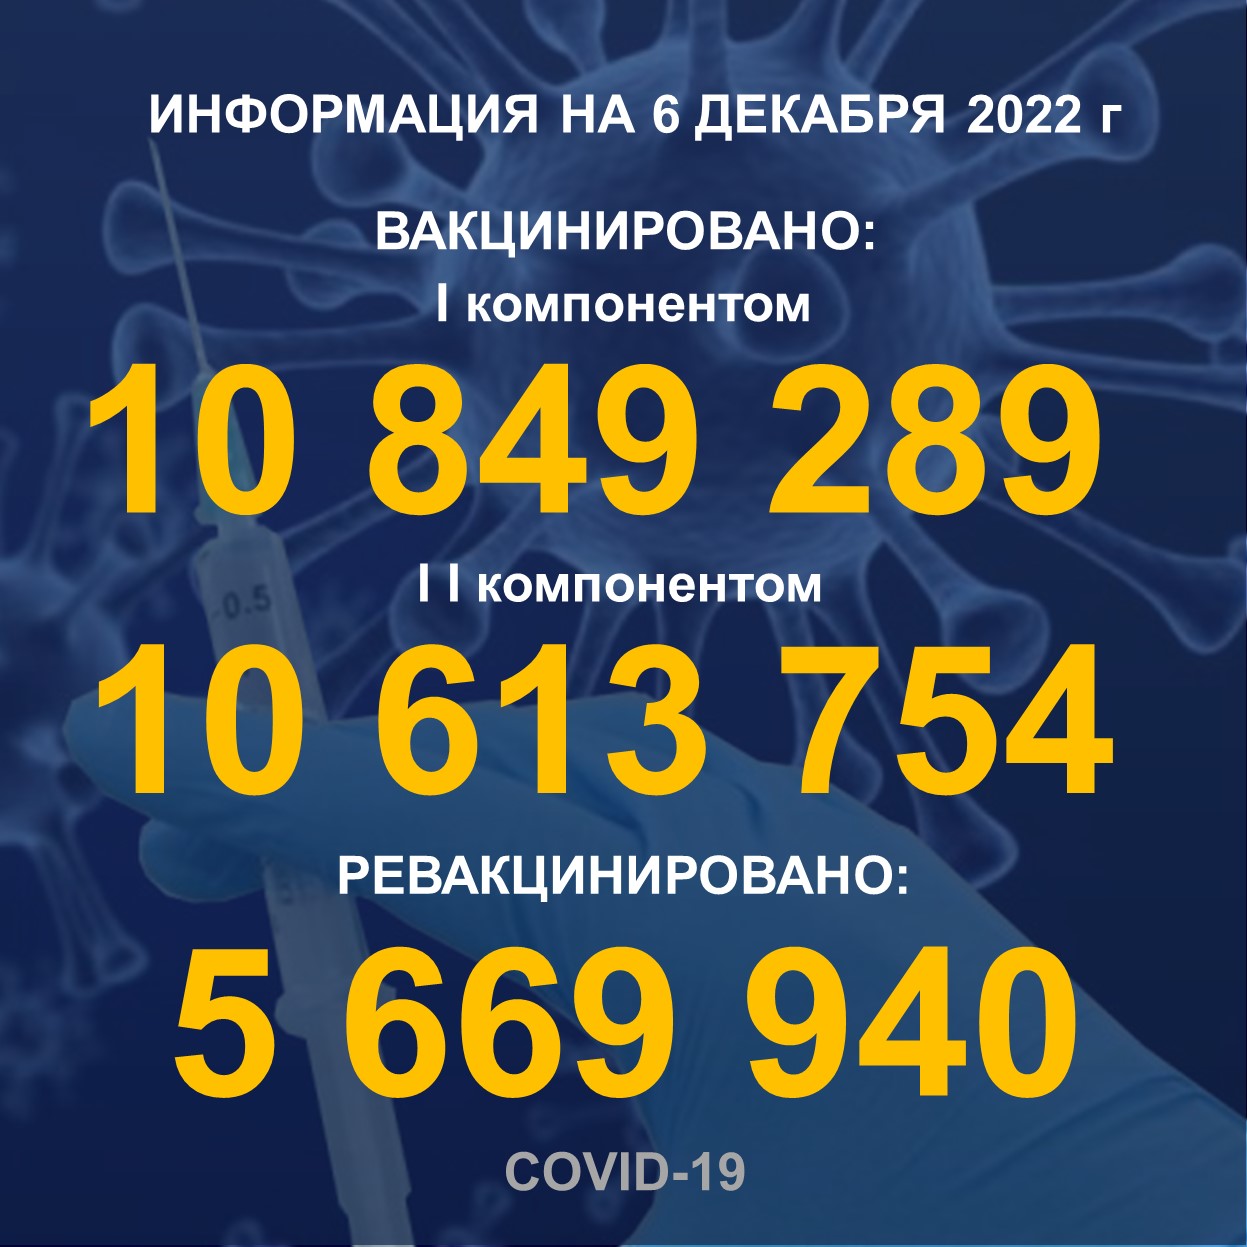 I компонентом 10,849,289 человек провакцинировано в Казахстане на 6.12.2022 г, II компонентом 10,613,754  человек. Ревакцинировано – 5,669,940